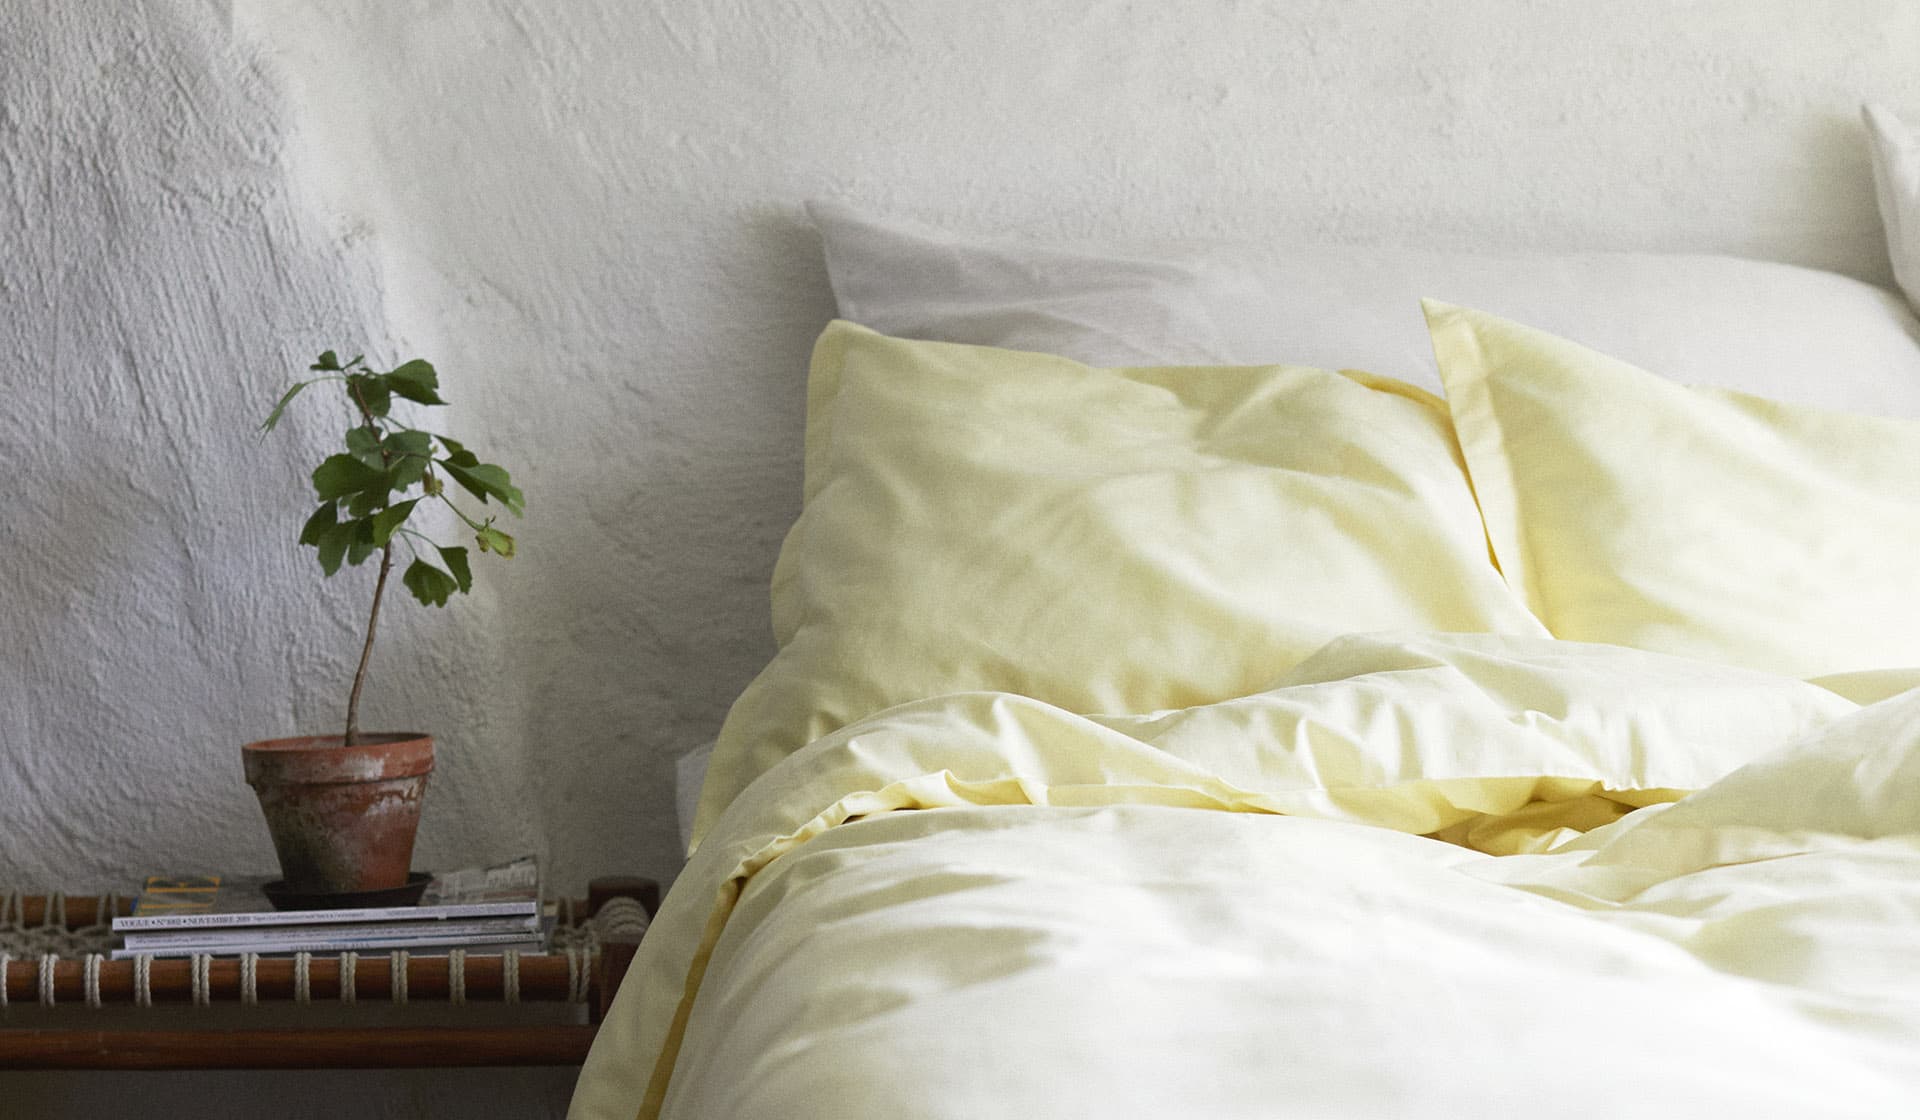 Sängkläder, handdukar, plädar, filtar i ekologisk bomull online. Köp nya hemtextilier från Alva